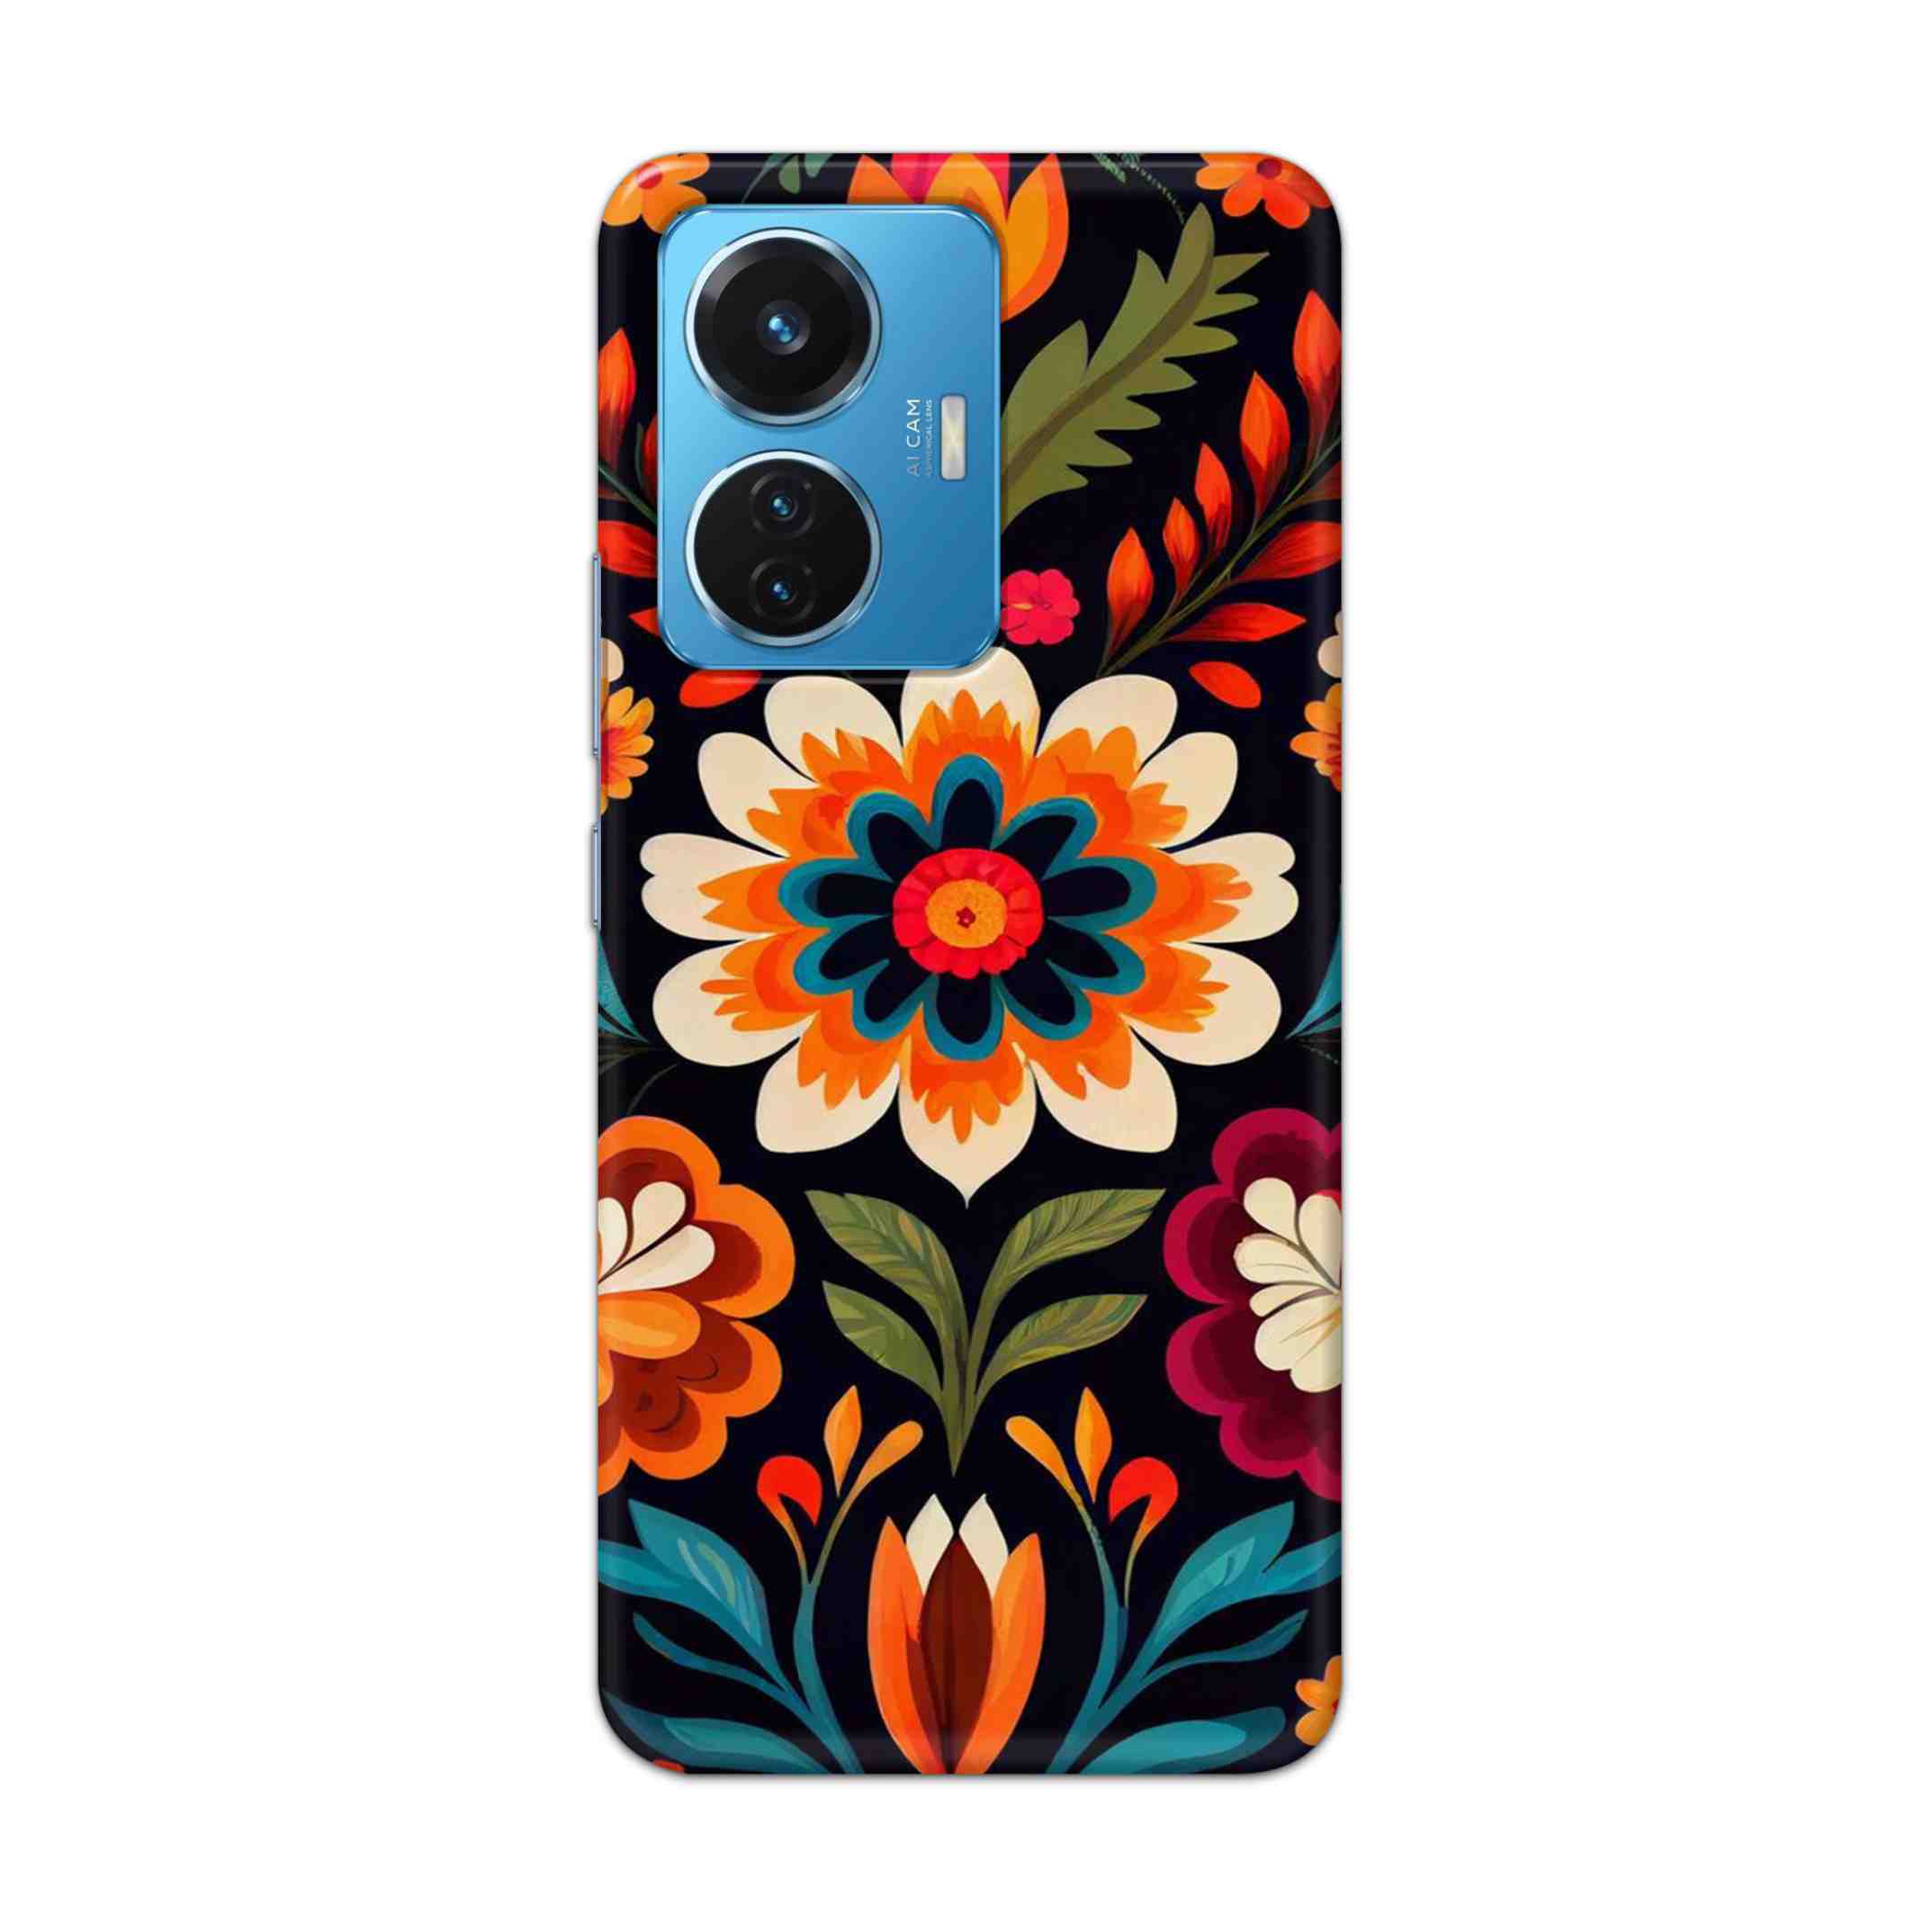 Buy Flower Hard Back Mobile Phone Case Cover For Vivo T1 44W Online